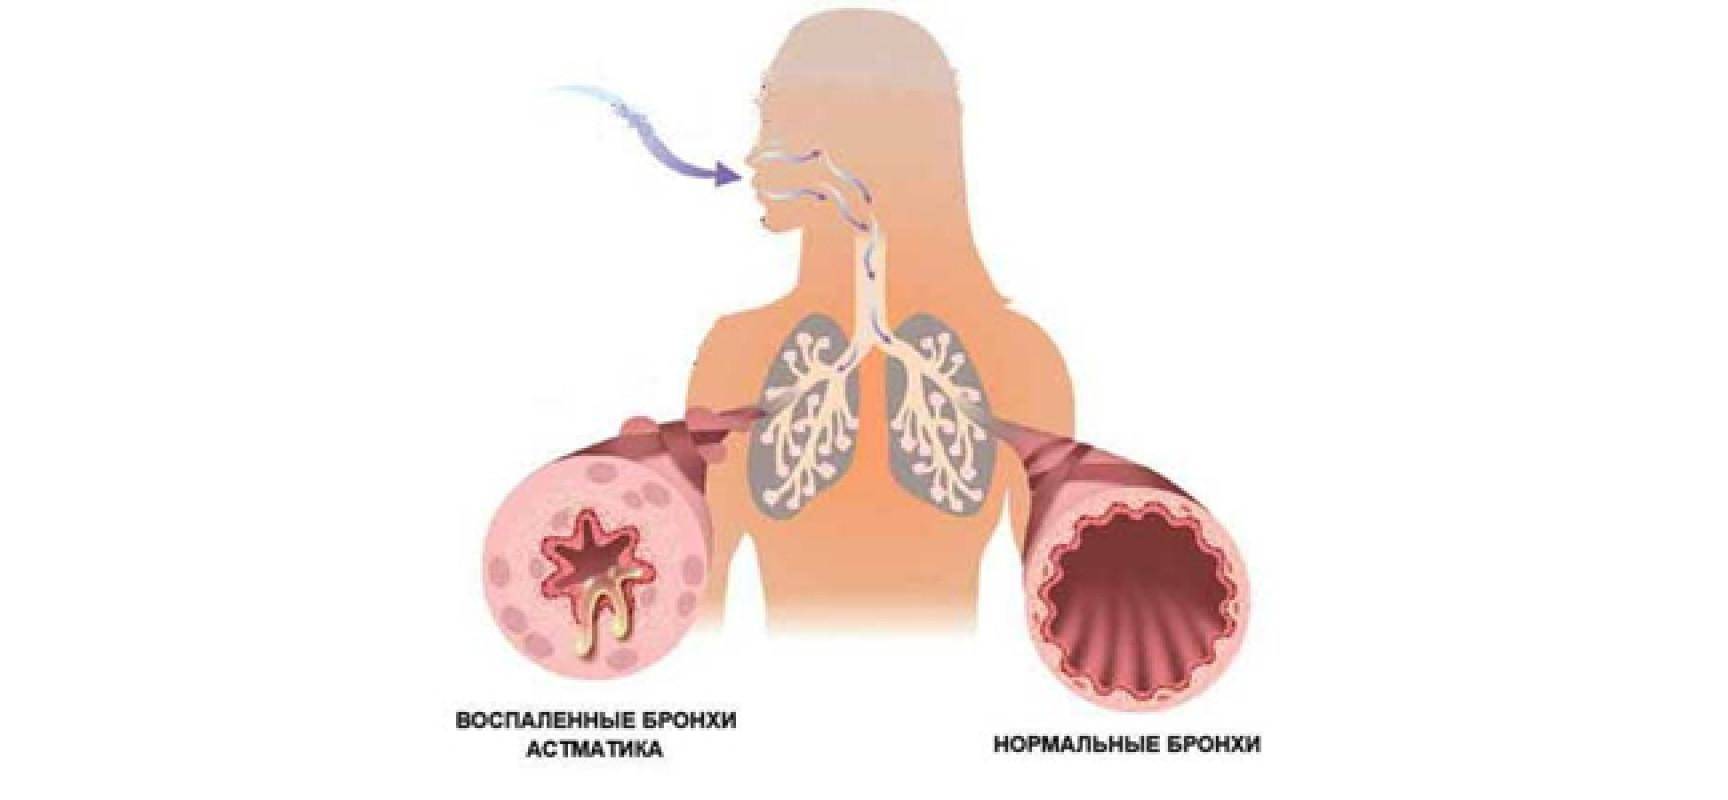 Пневмония заразна или нет - меры профилактики